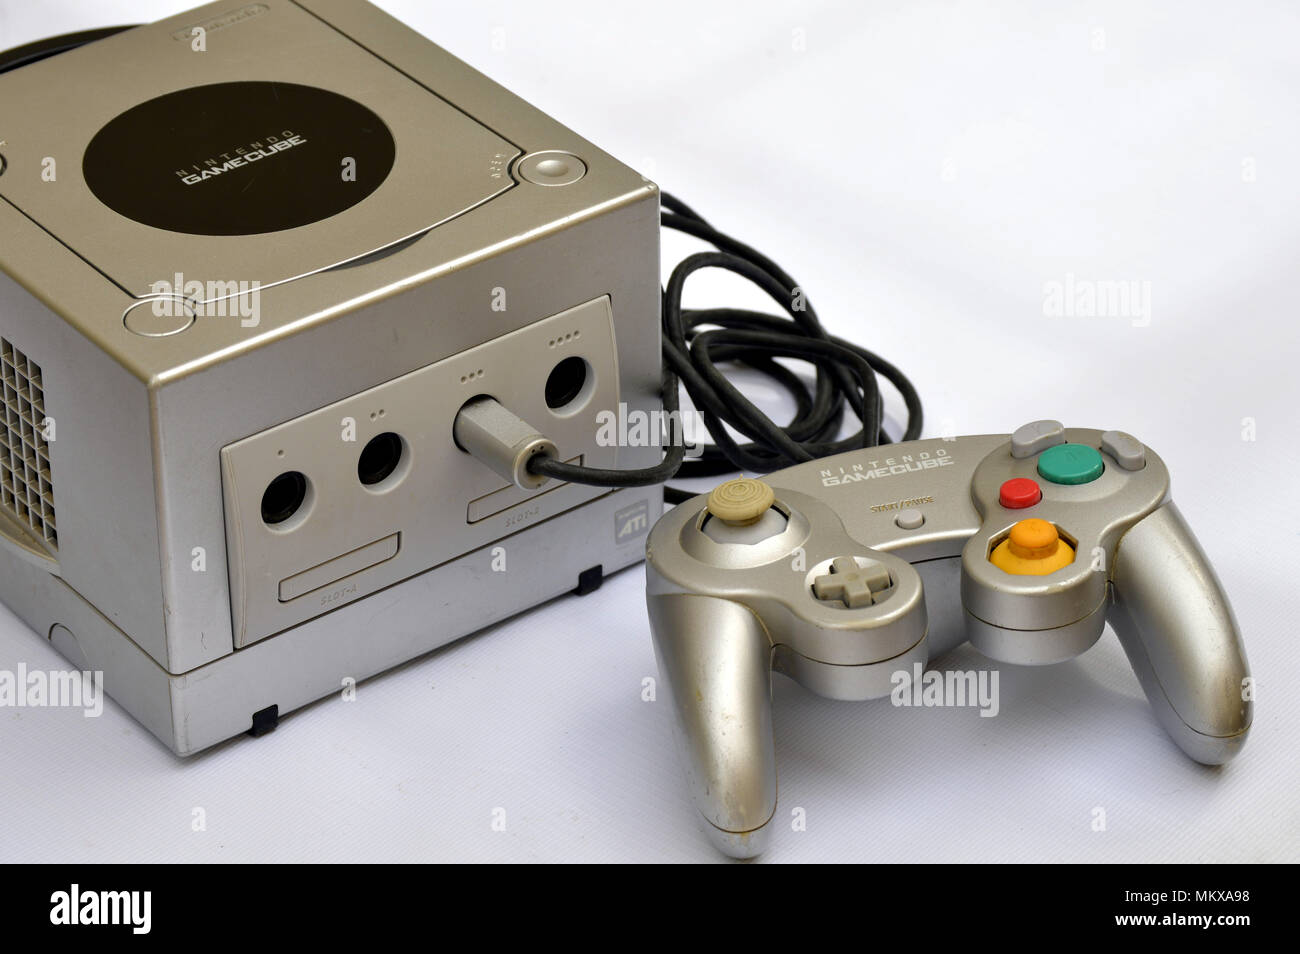 Nintendo Gamecube console (GCN), platinum version Stock Photo